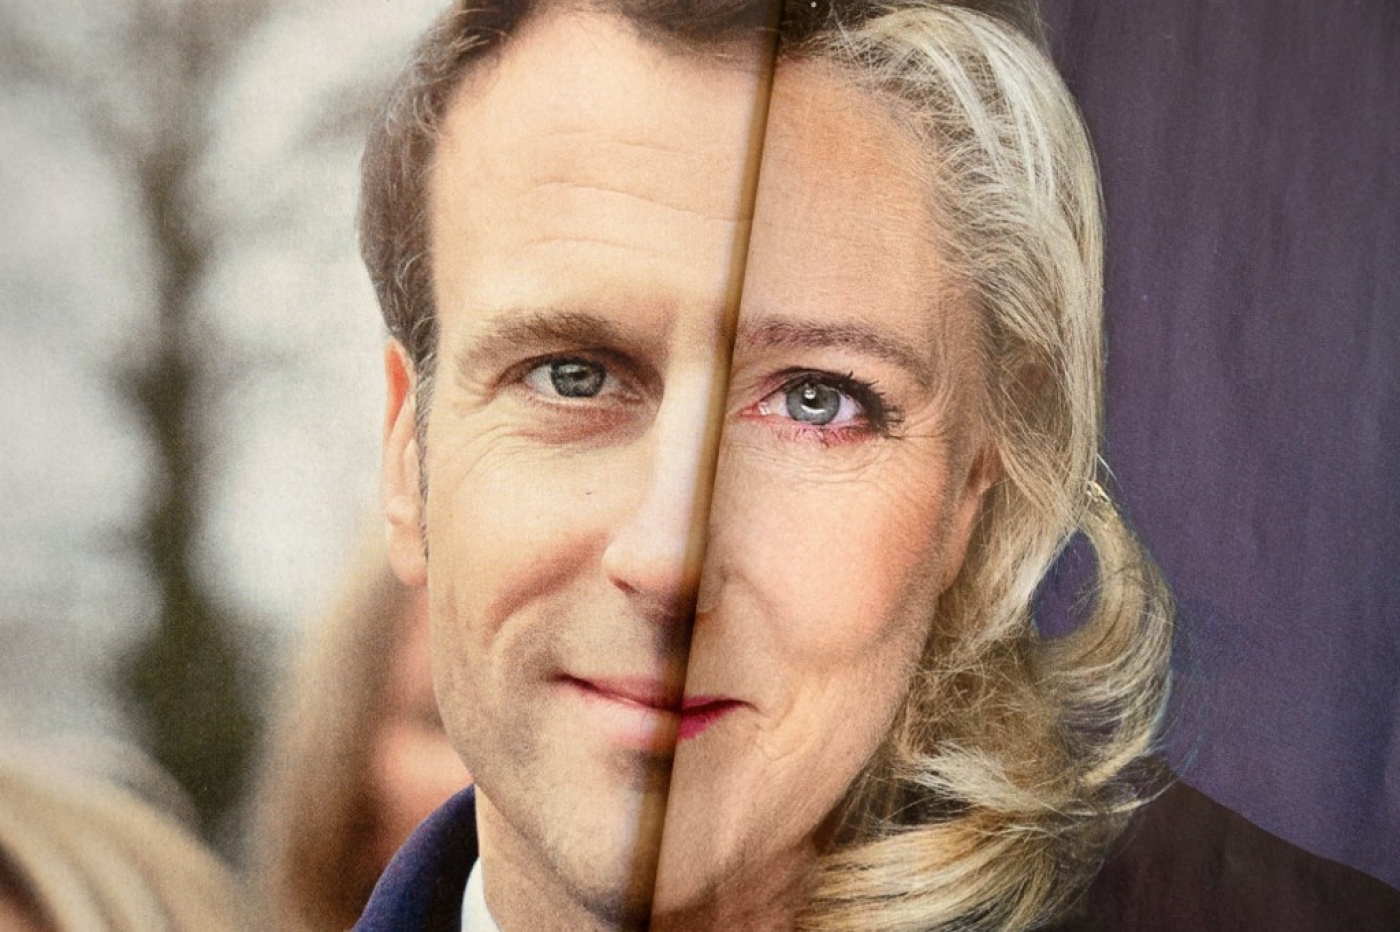 Tracts électoraux pliés des deux finalistes du premier tour de la présidentielle française : à gauche, celui d’Emmanuel Macron, à droite, celui de Marine Le Pen (AFP/Nicolas Tucat)